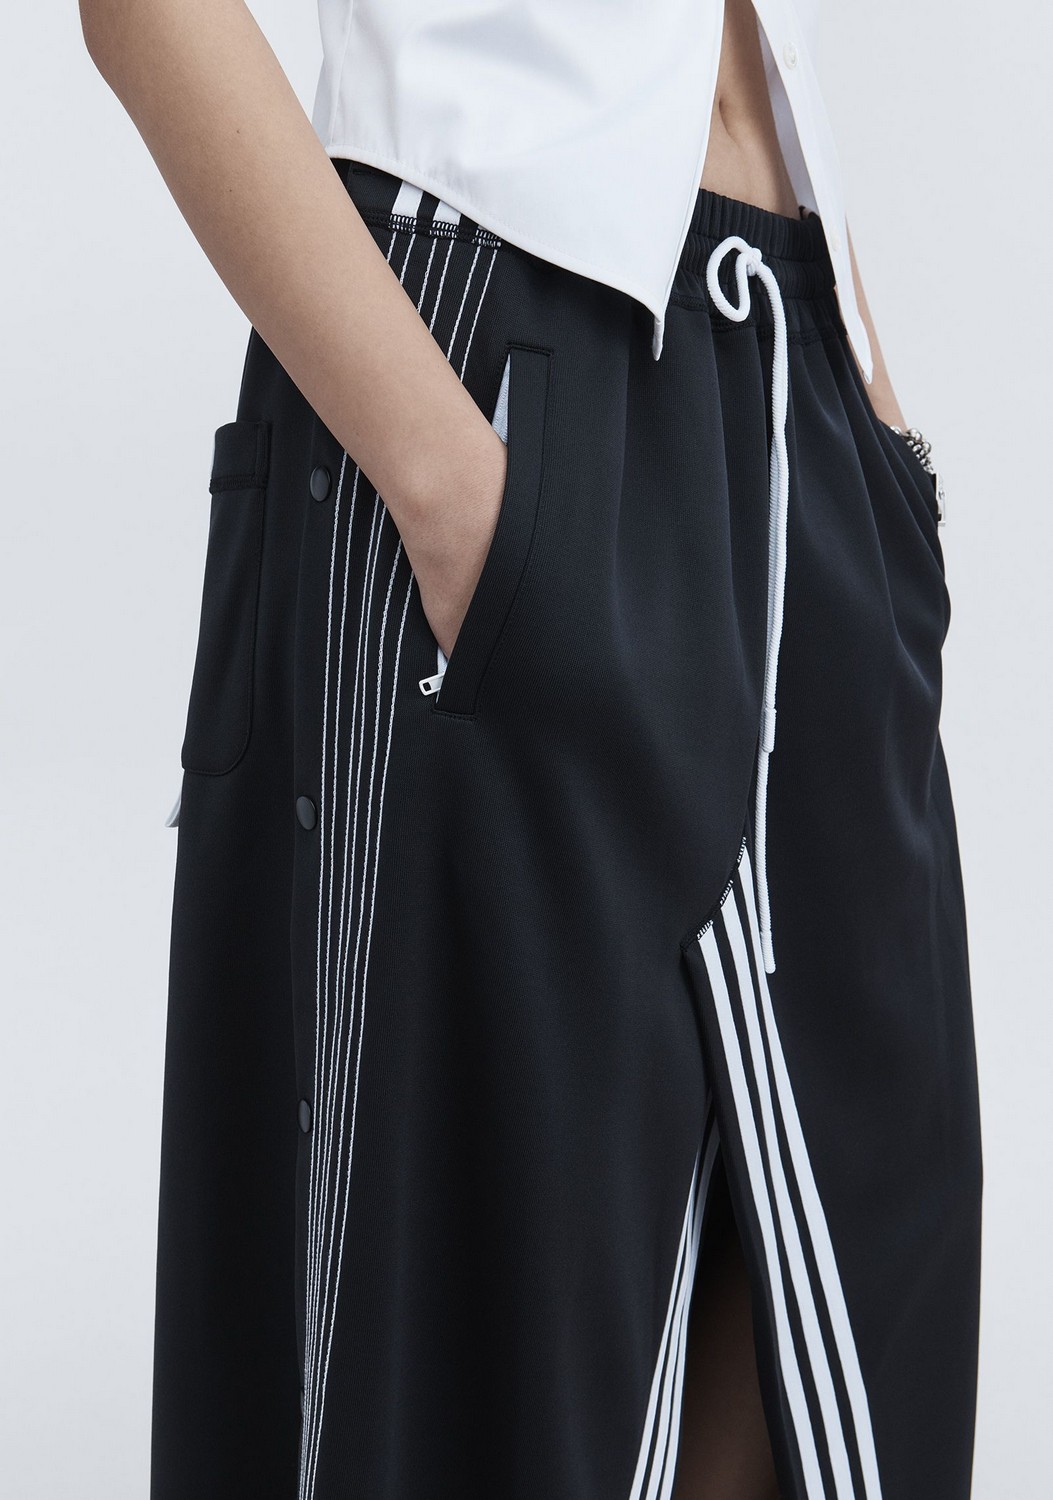 Adidas Originals And Alexander Wang First Spring 2018 Drop